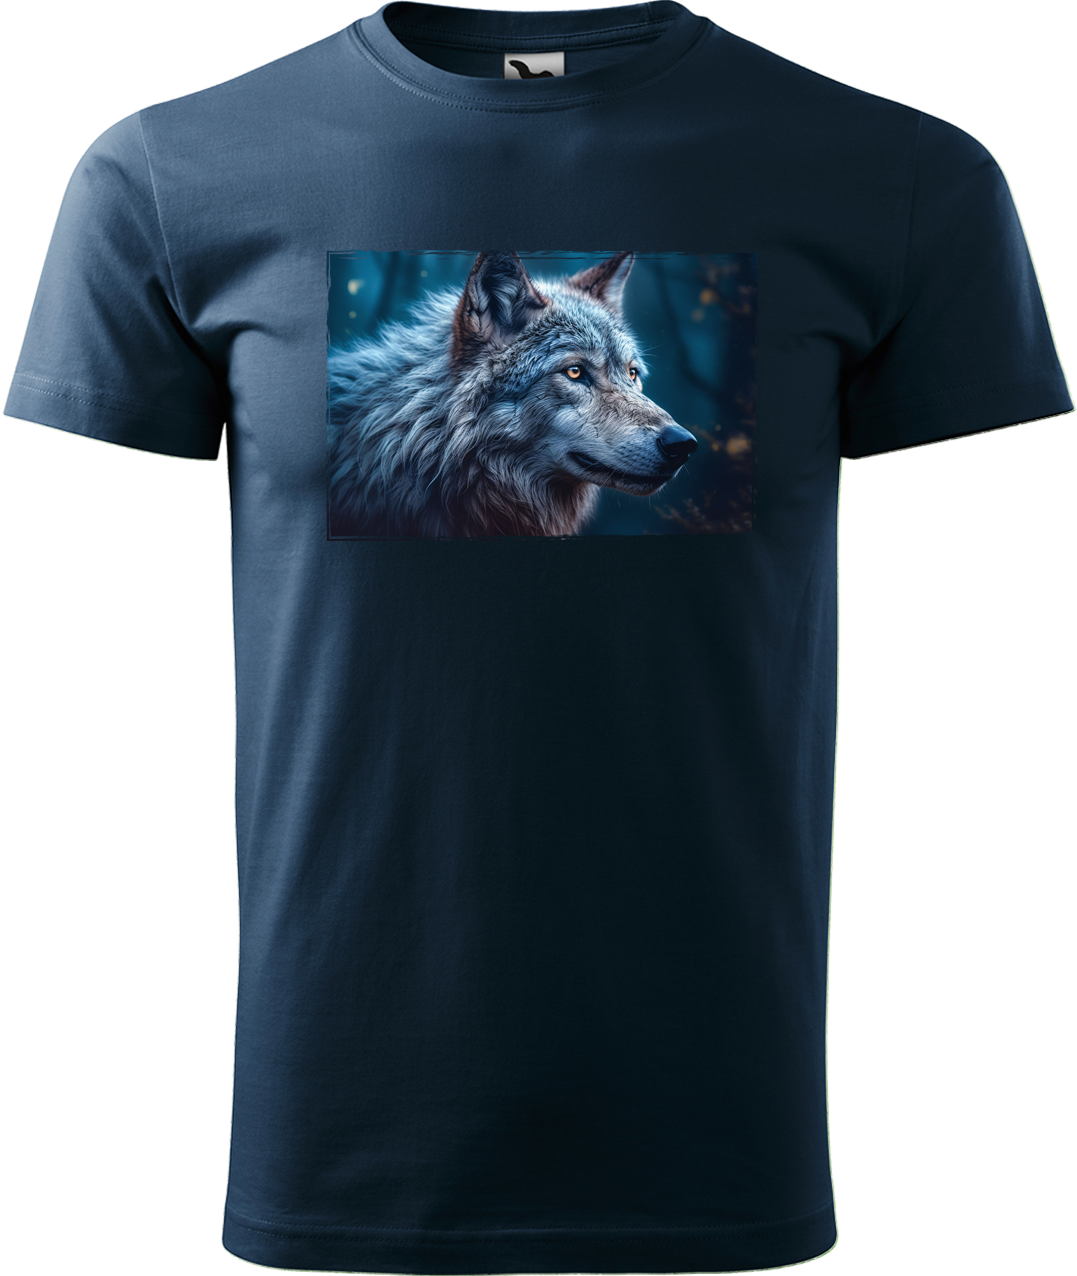 Pánské tričko s vlkem - Modrý vlk Velikost: 4XL, Barva: Námořní modrá (02)